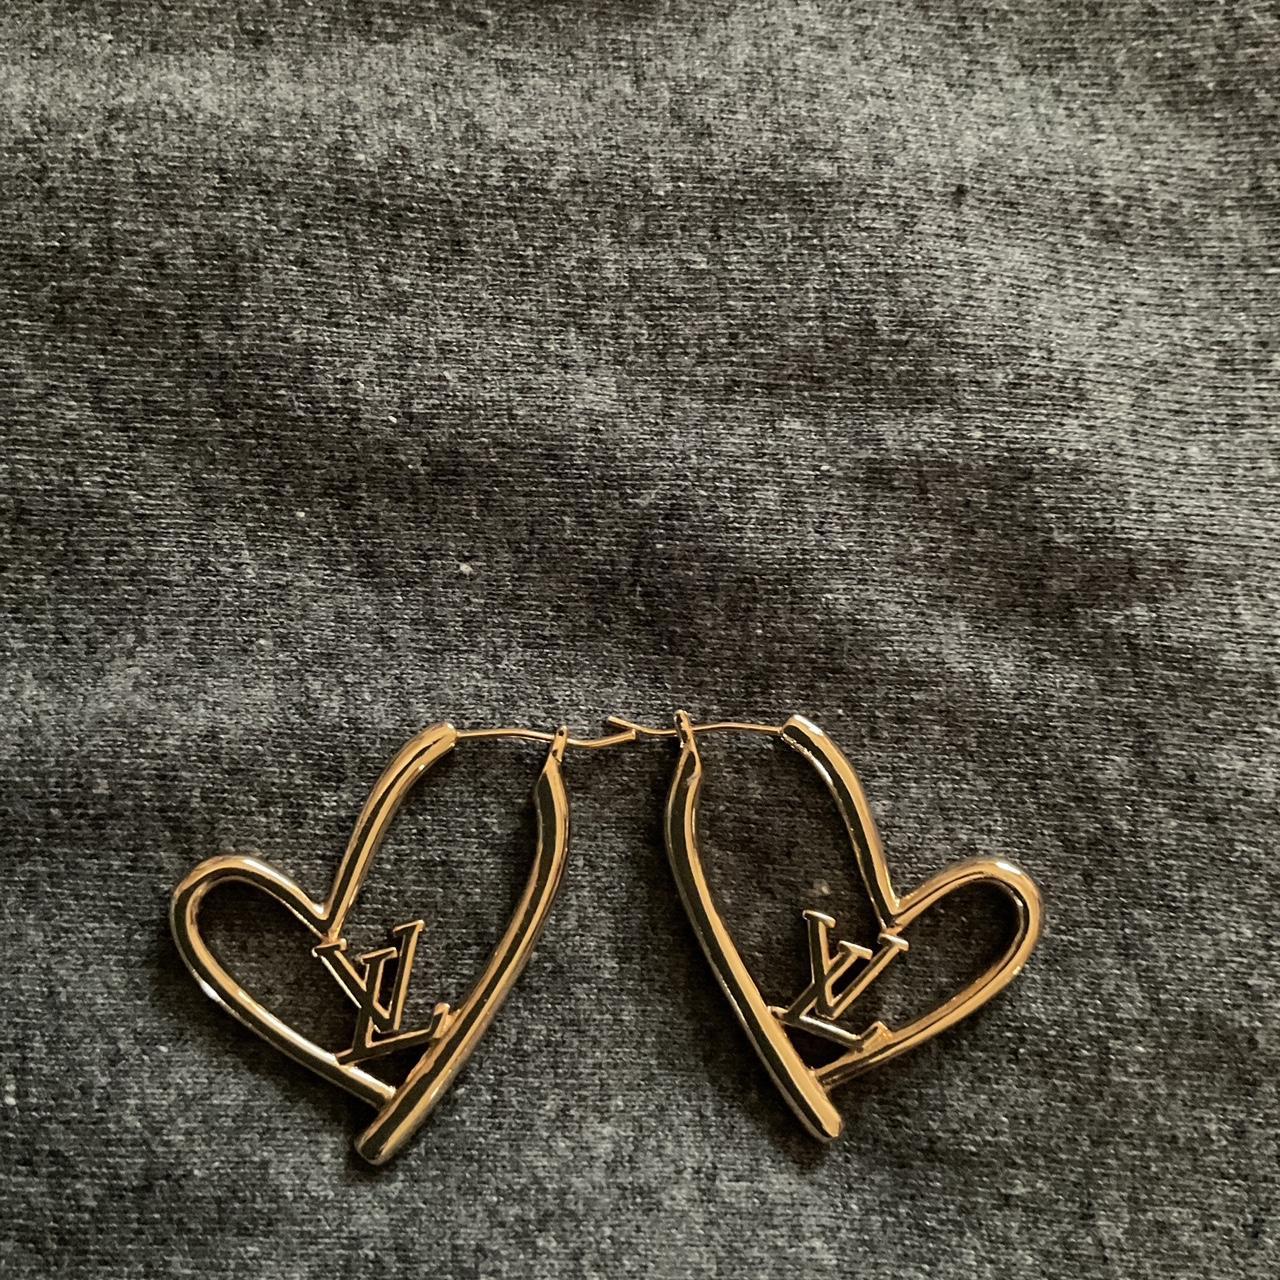 Lv heart earrings - Depop